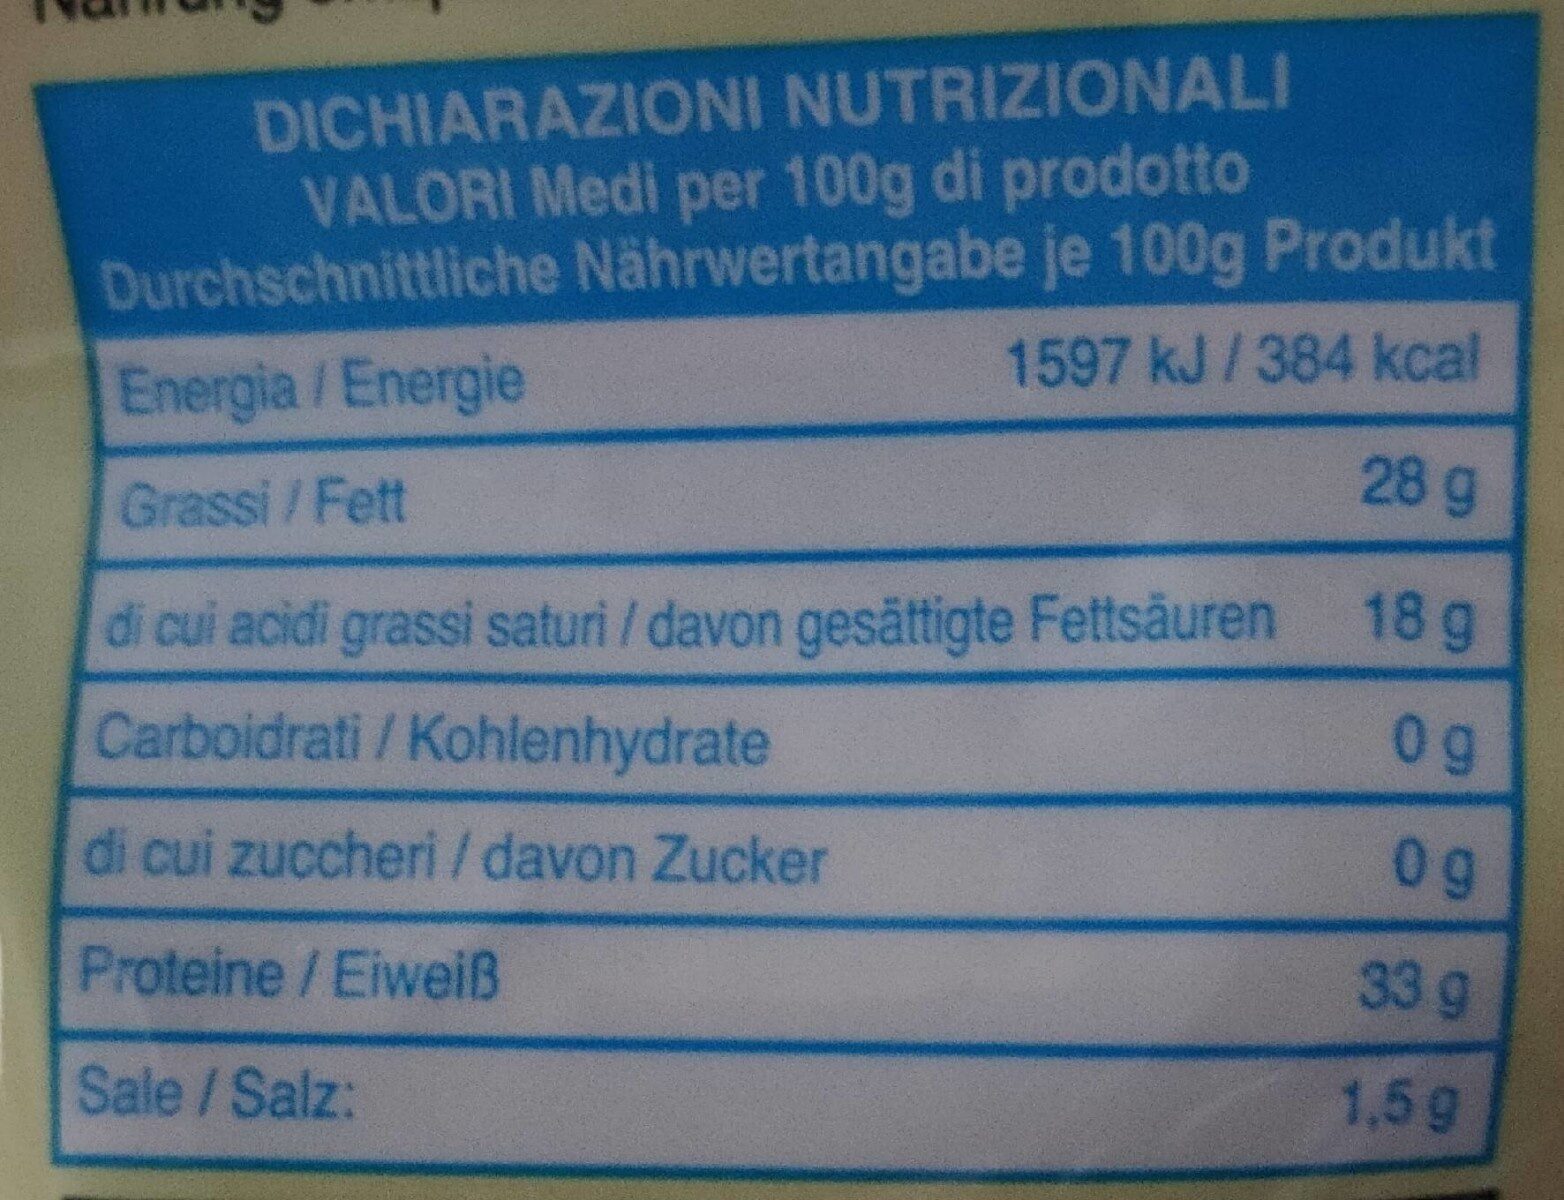 Bocconcini Grana padano - Nutrition facts - it